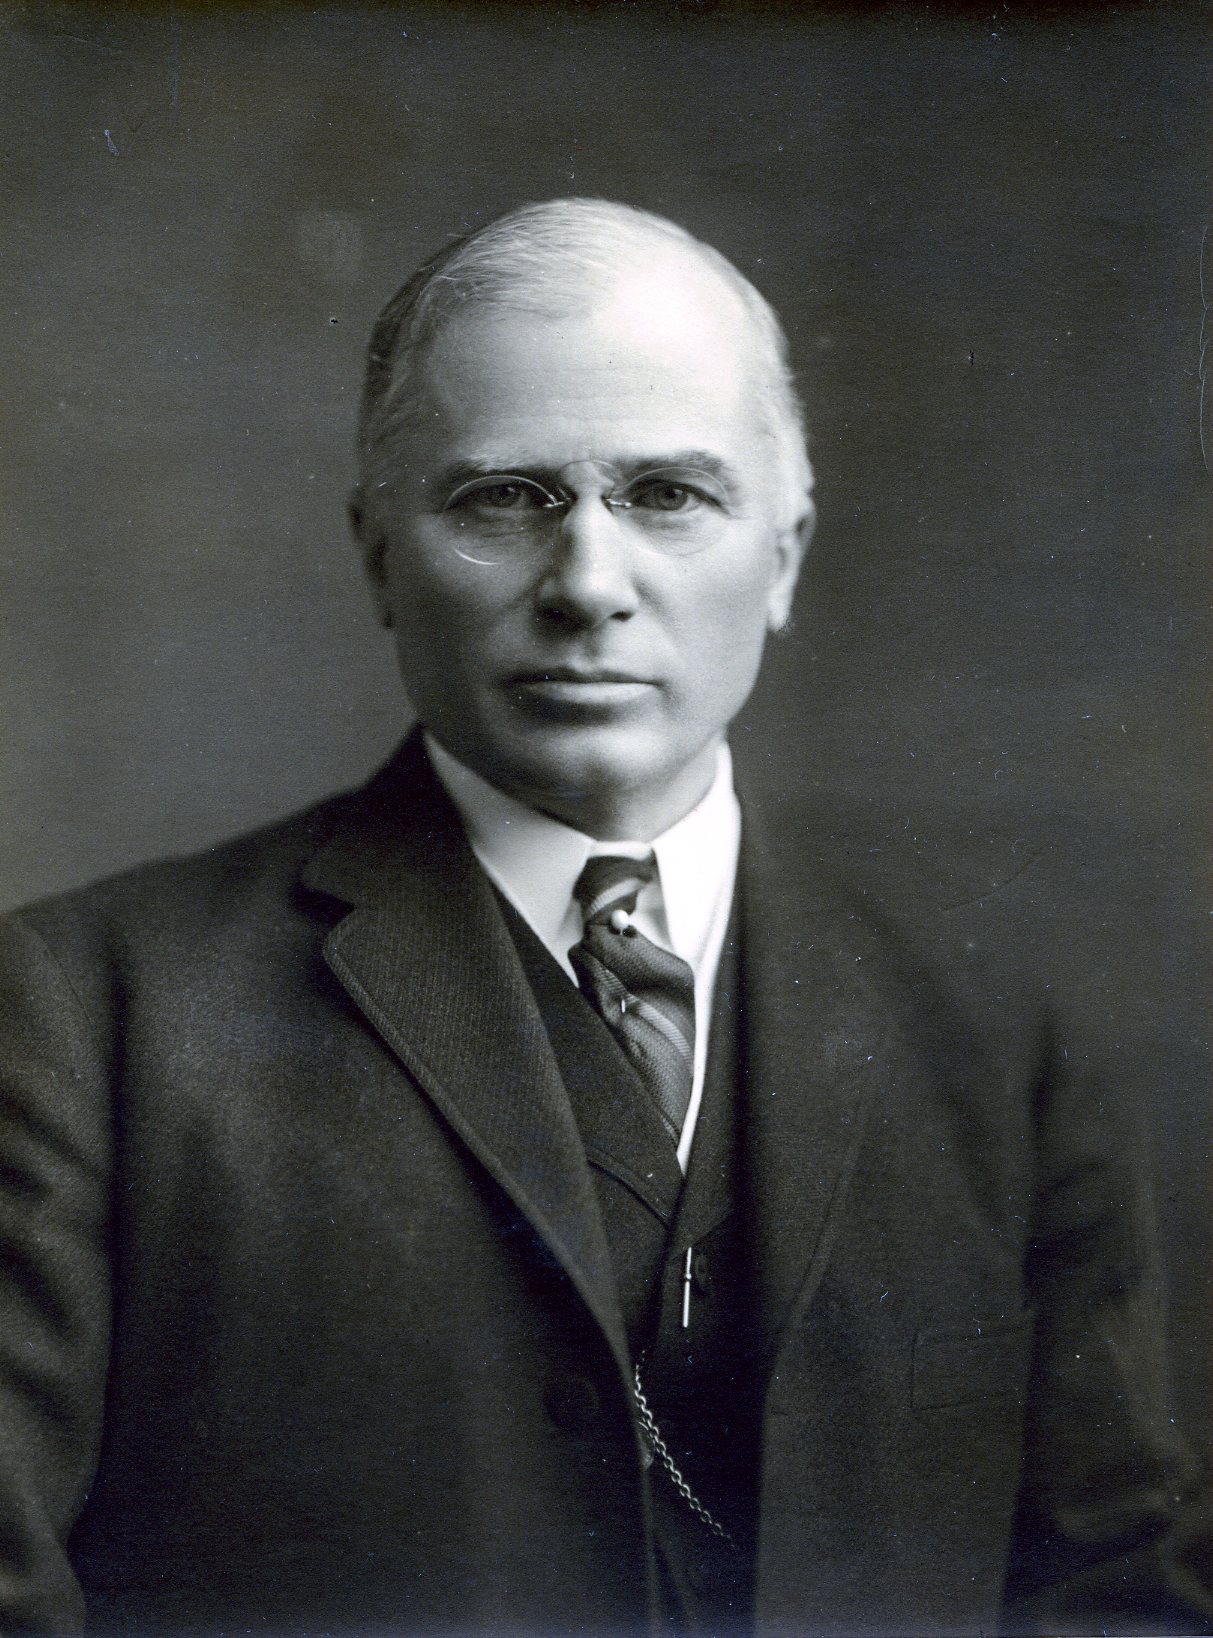 Member portrait of Daniel Willard